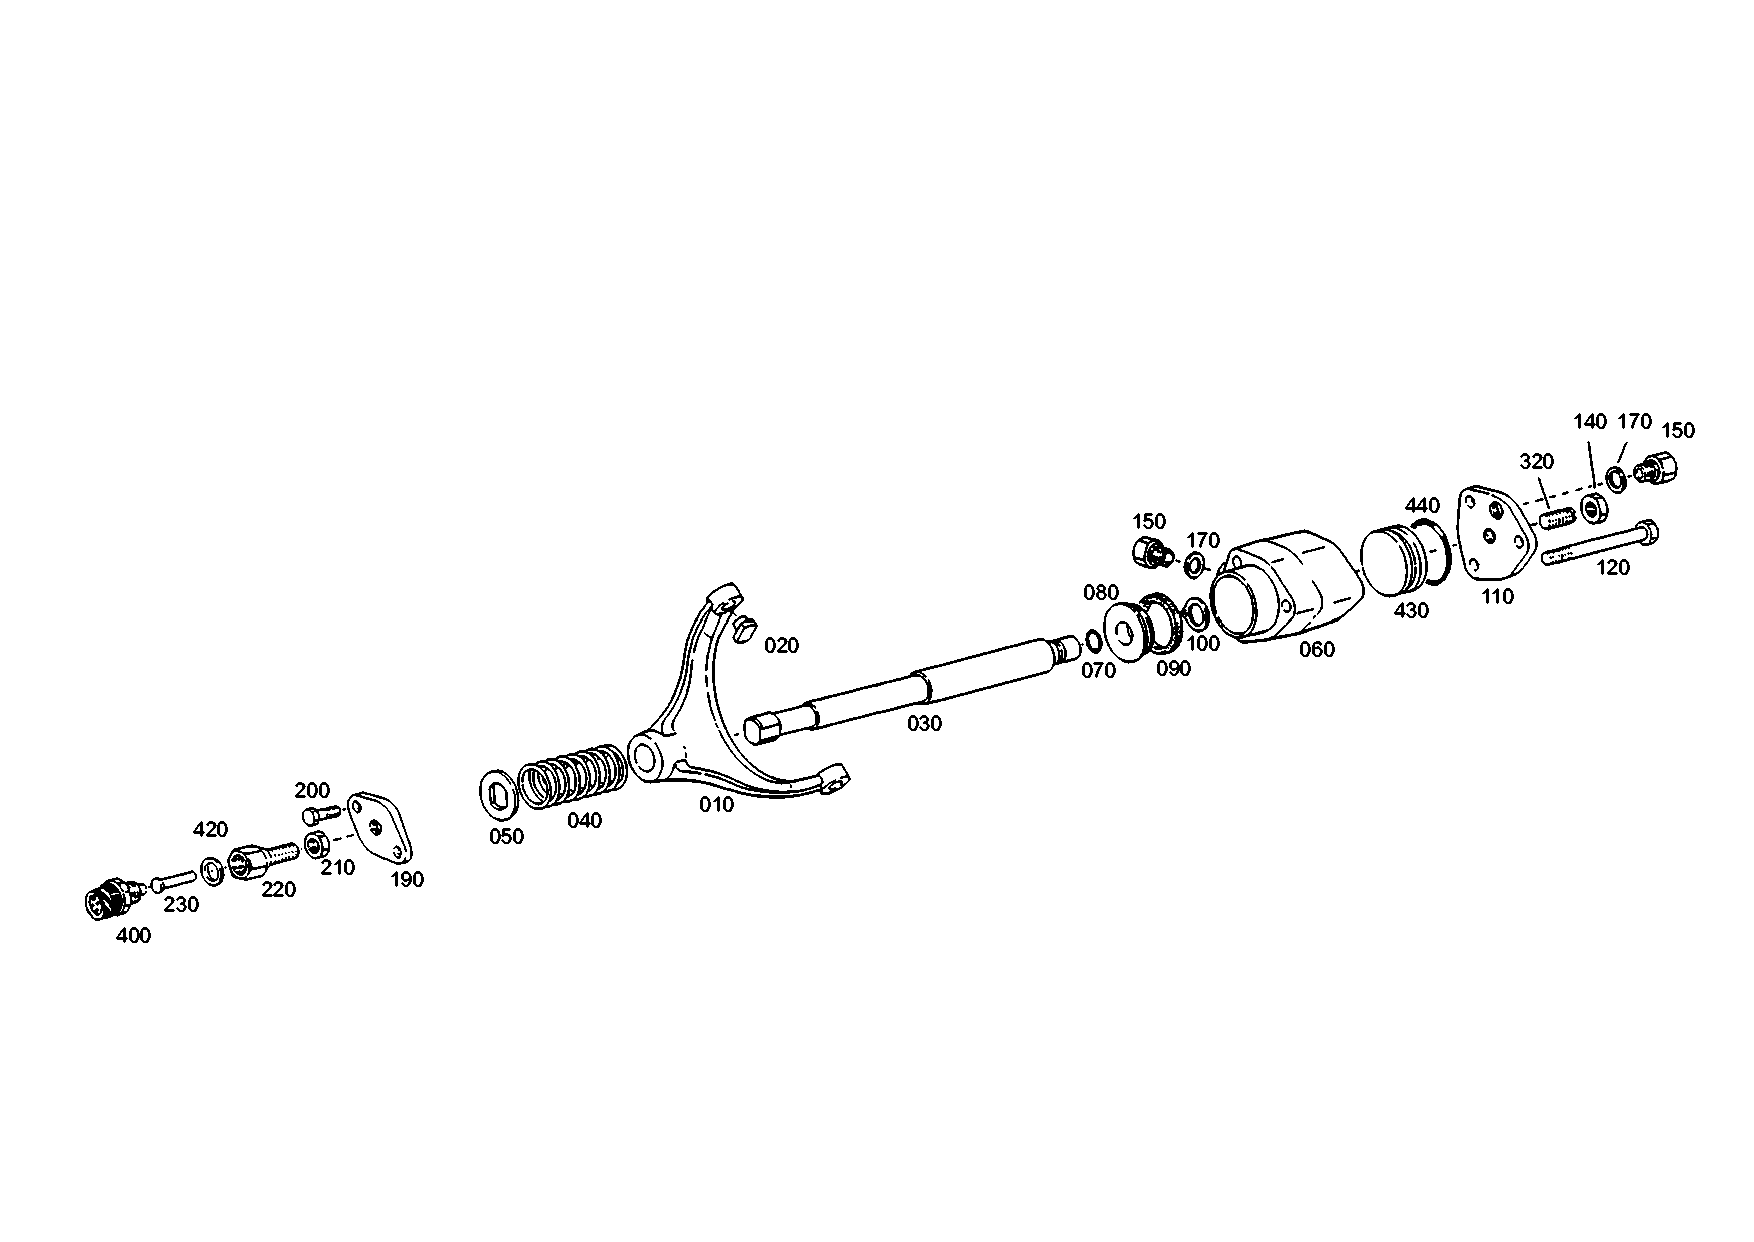 drawing for XUZHOU 171600240025 - GEAR SHIFT FORK (figure 1)